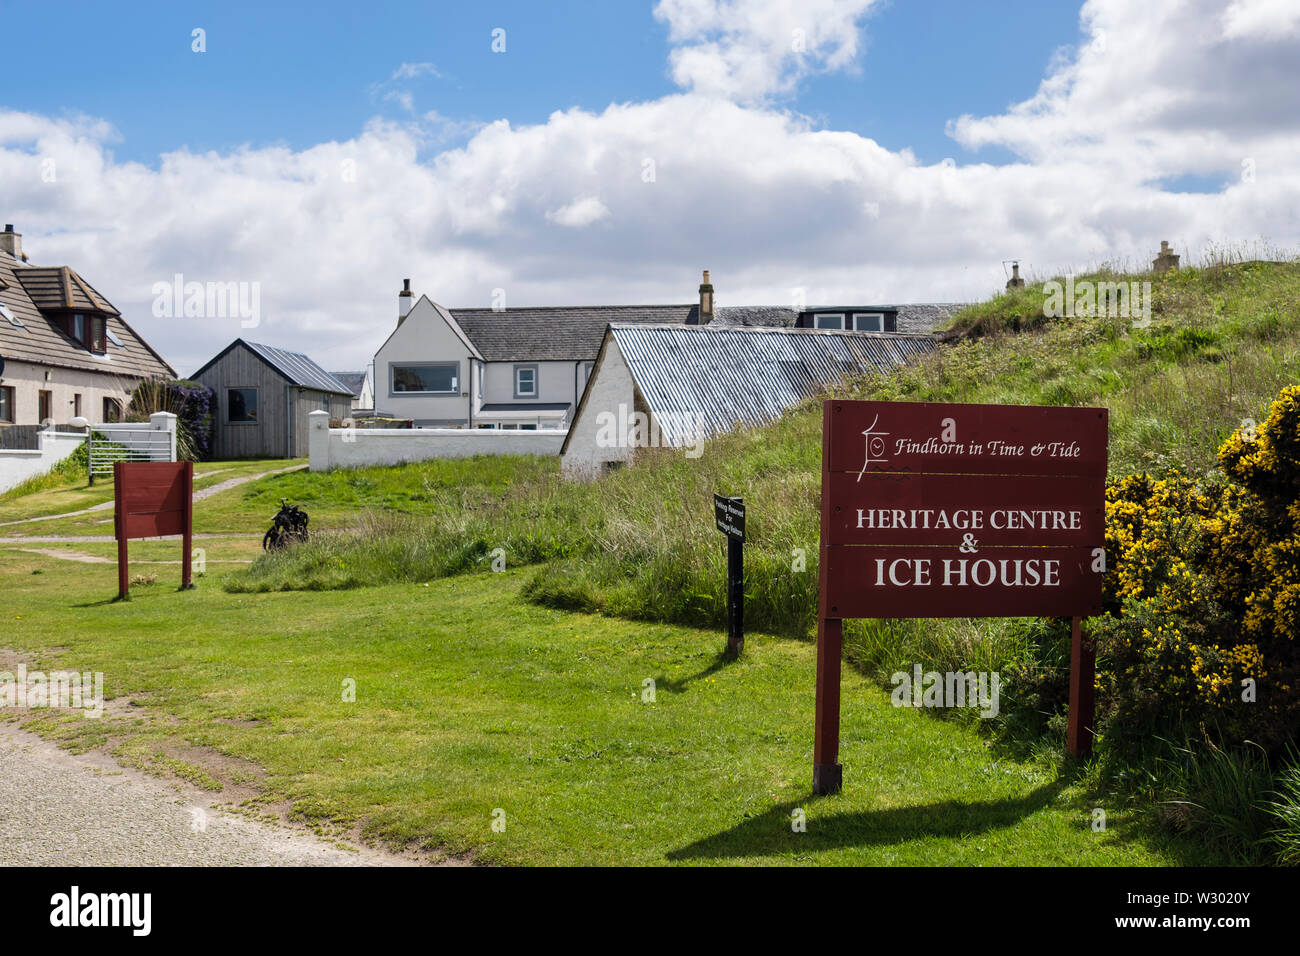 Centre du patrimoine mondial et l'Ice House sign in village de Findhorn, Moray, Écosse, Royaume-Uni, Angleterre Banque D'Images